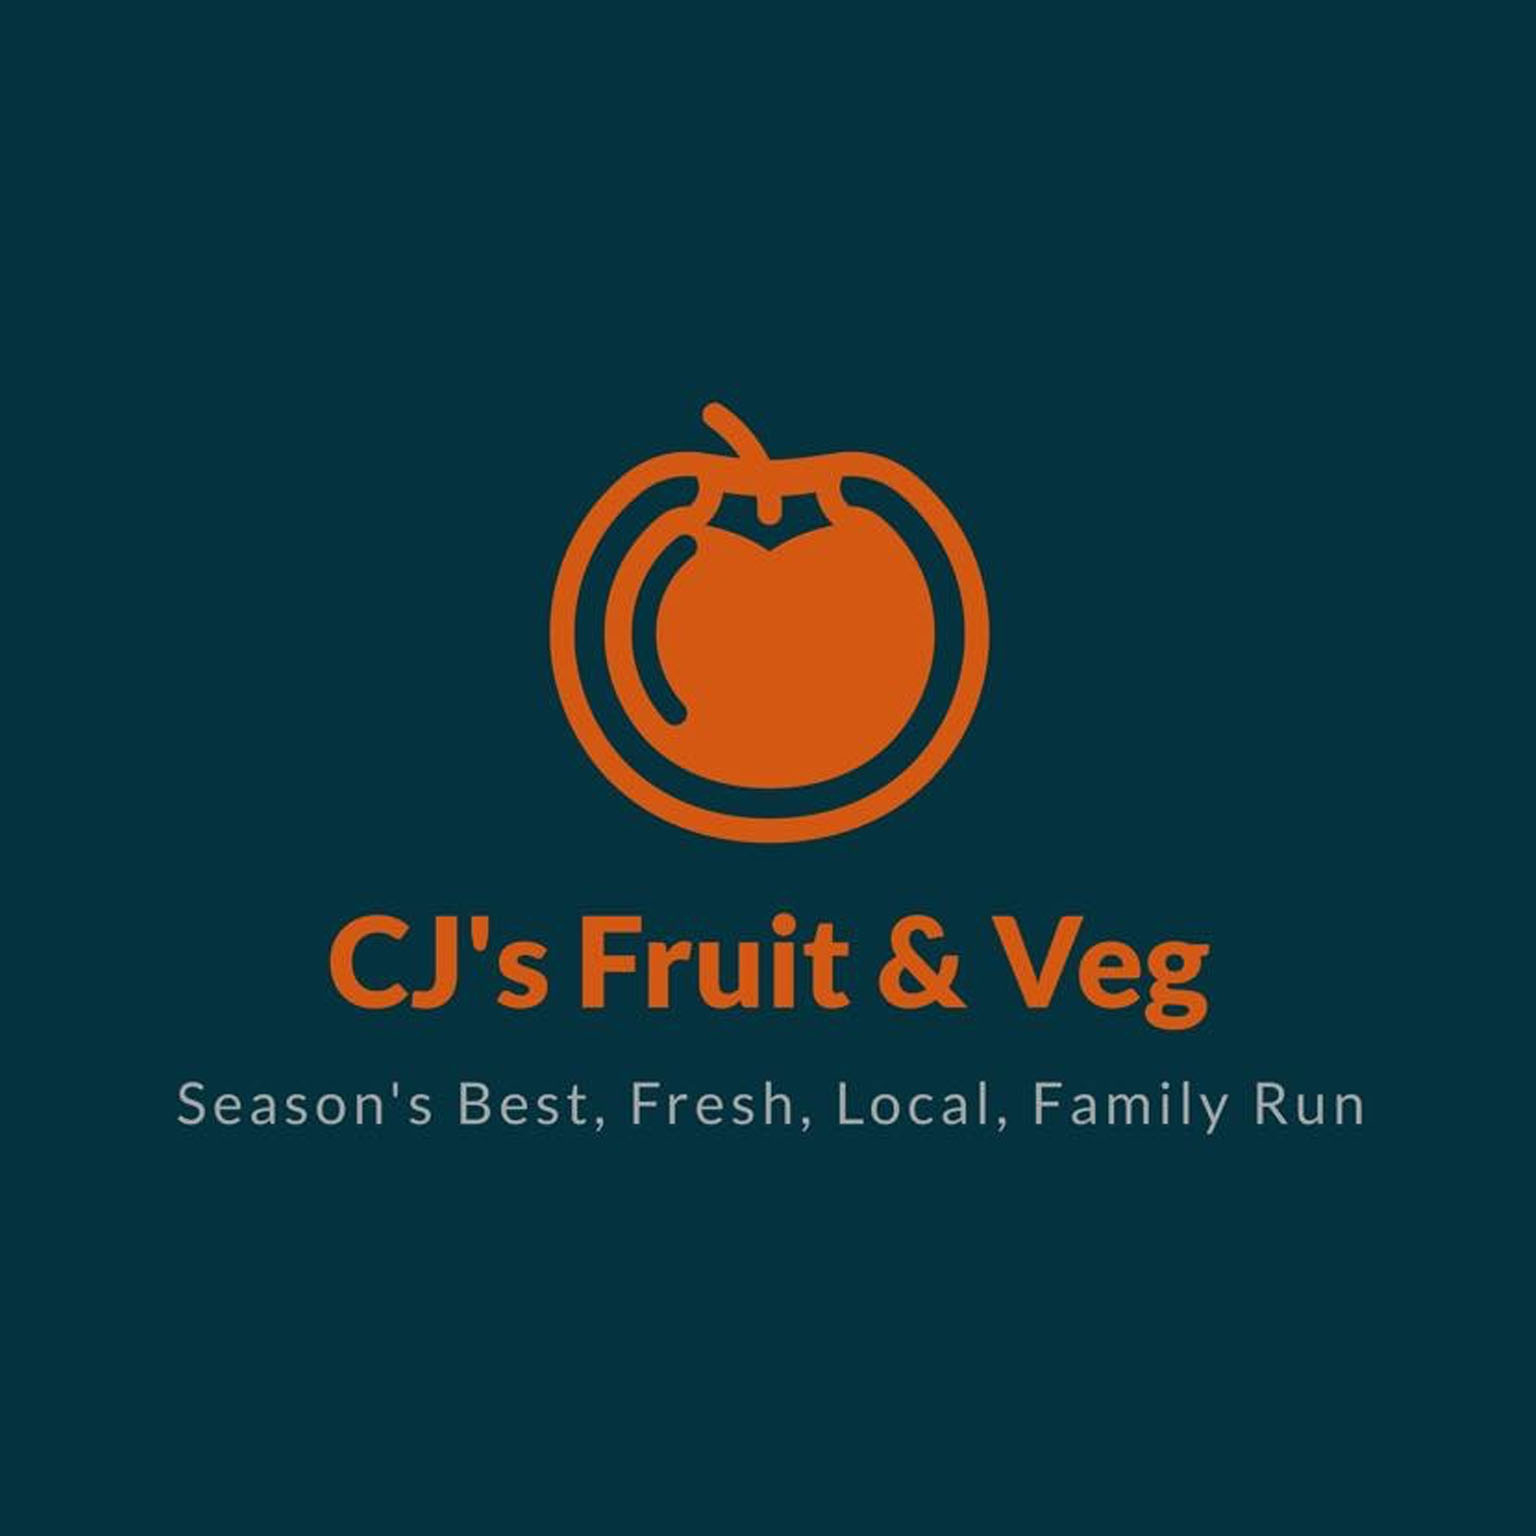 CJ’s Fruit & Veg